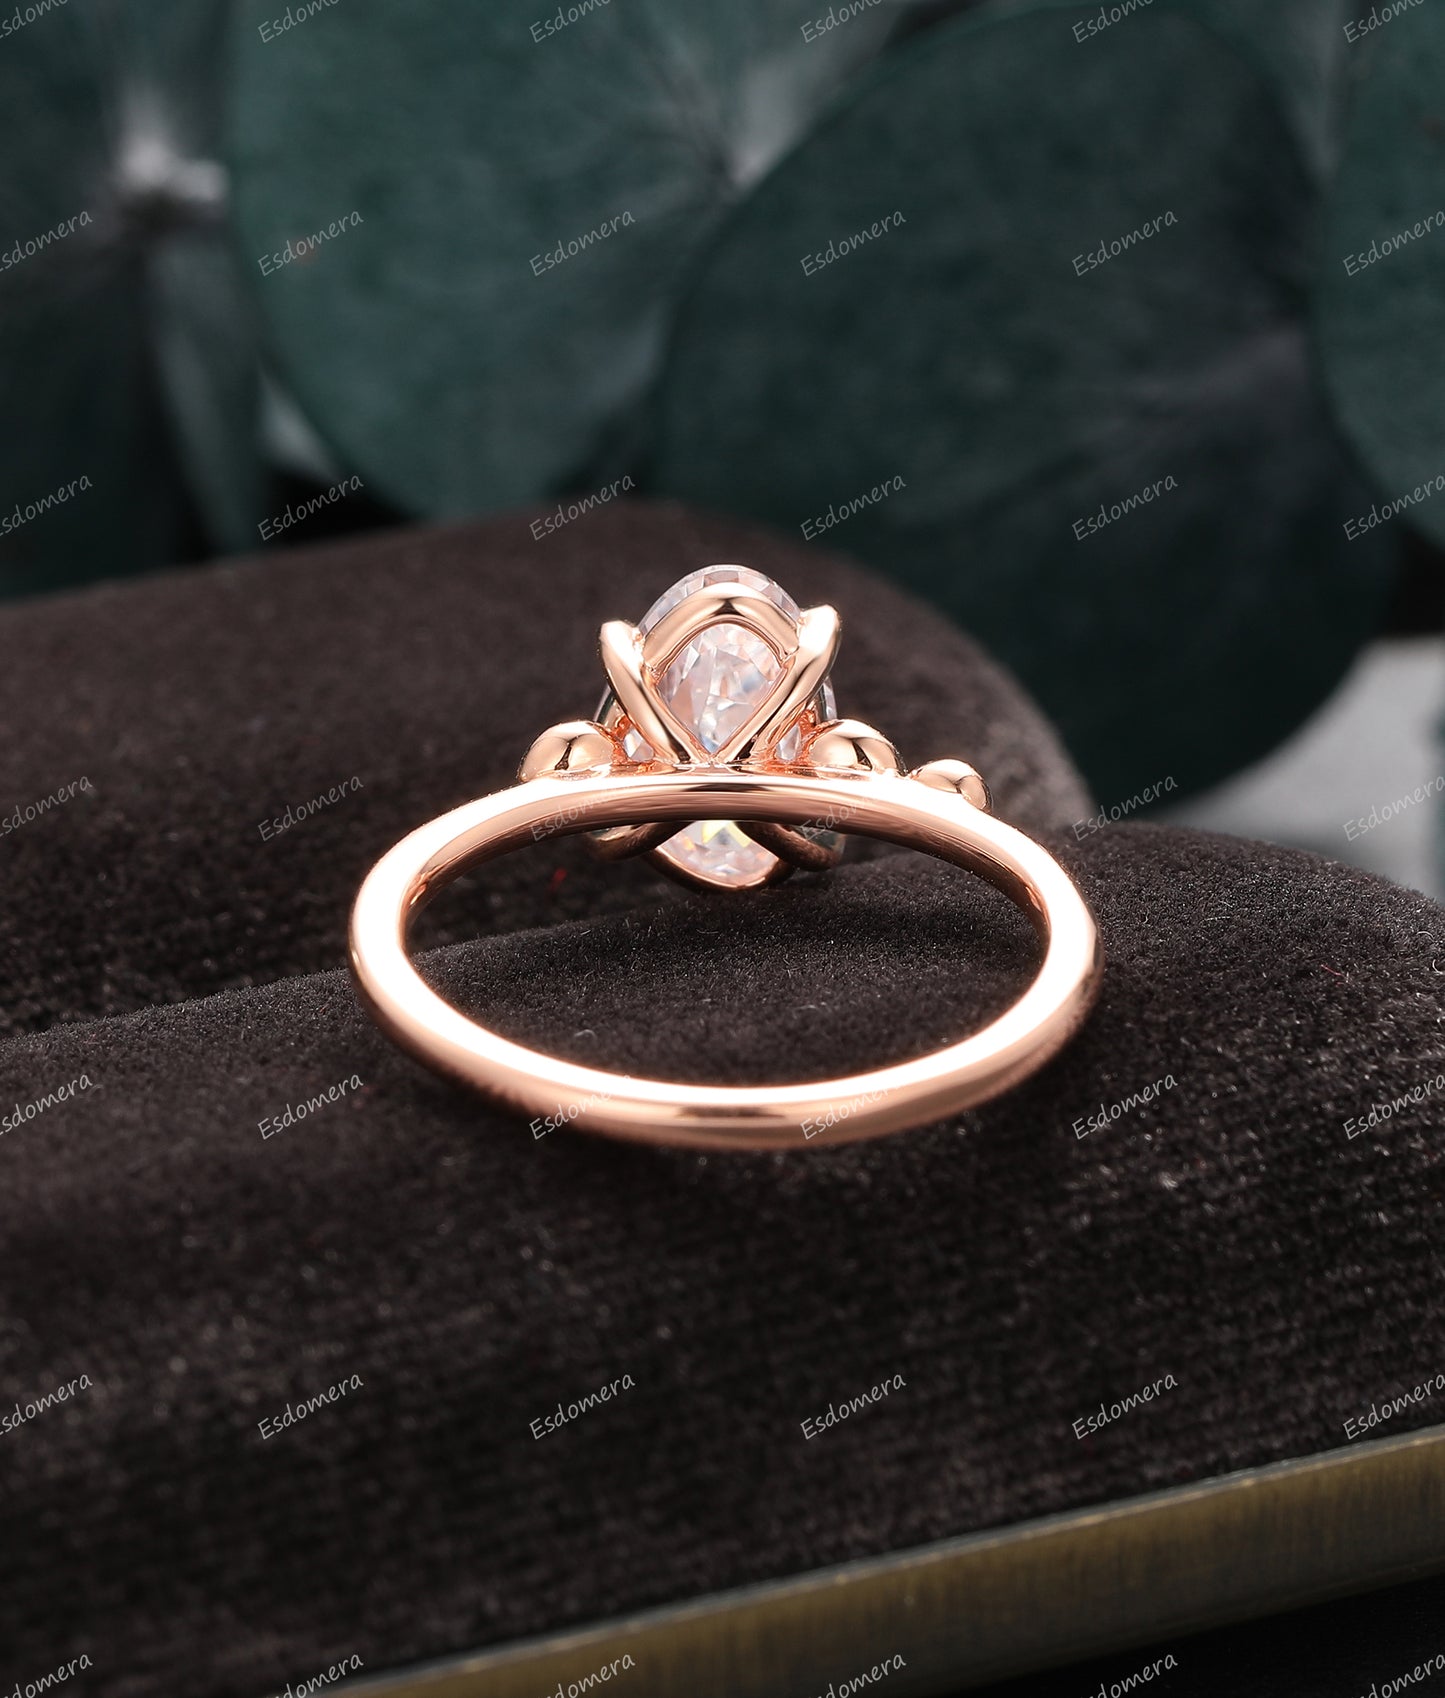 4 Prong Set Irregular Cut Moissanite Engagement Ring, 14k Rose Gold Ring For Women, Classic Moissanite Anniversary Ring